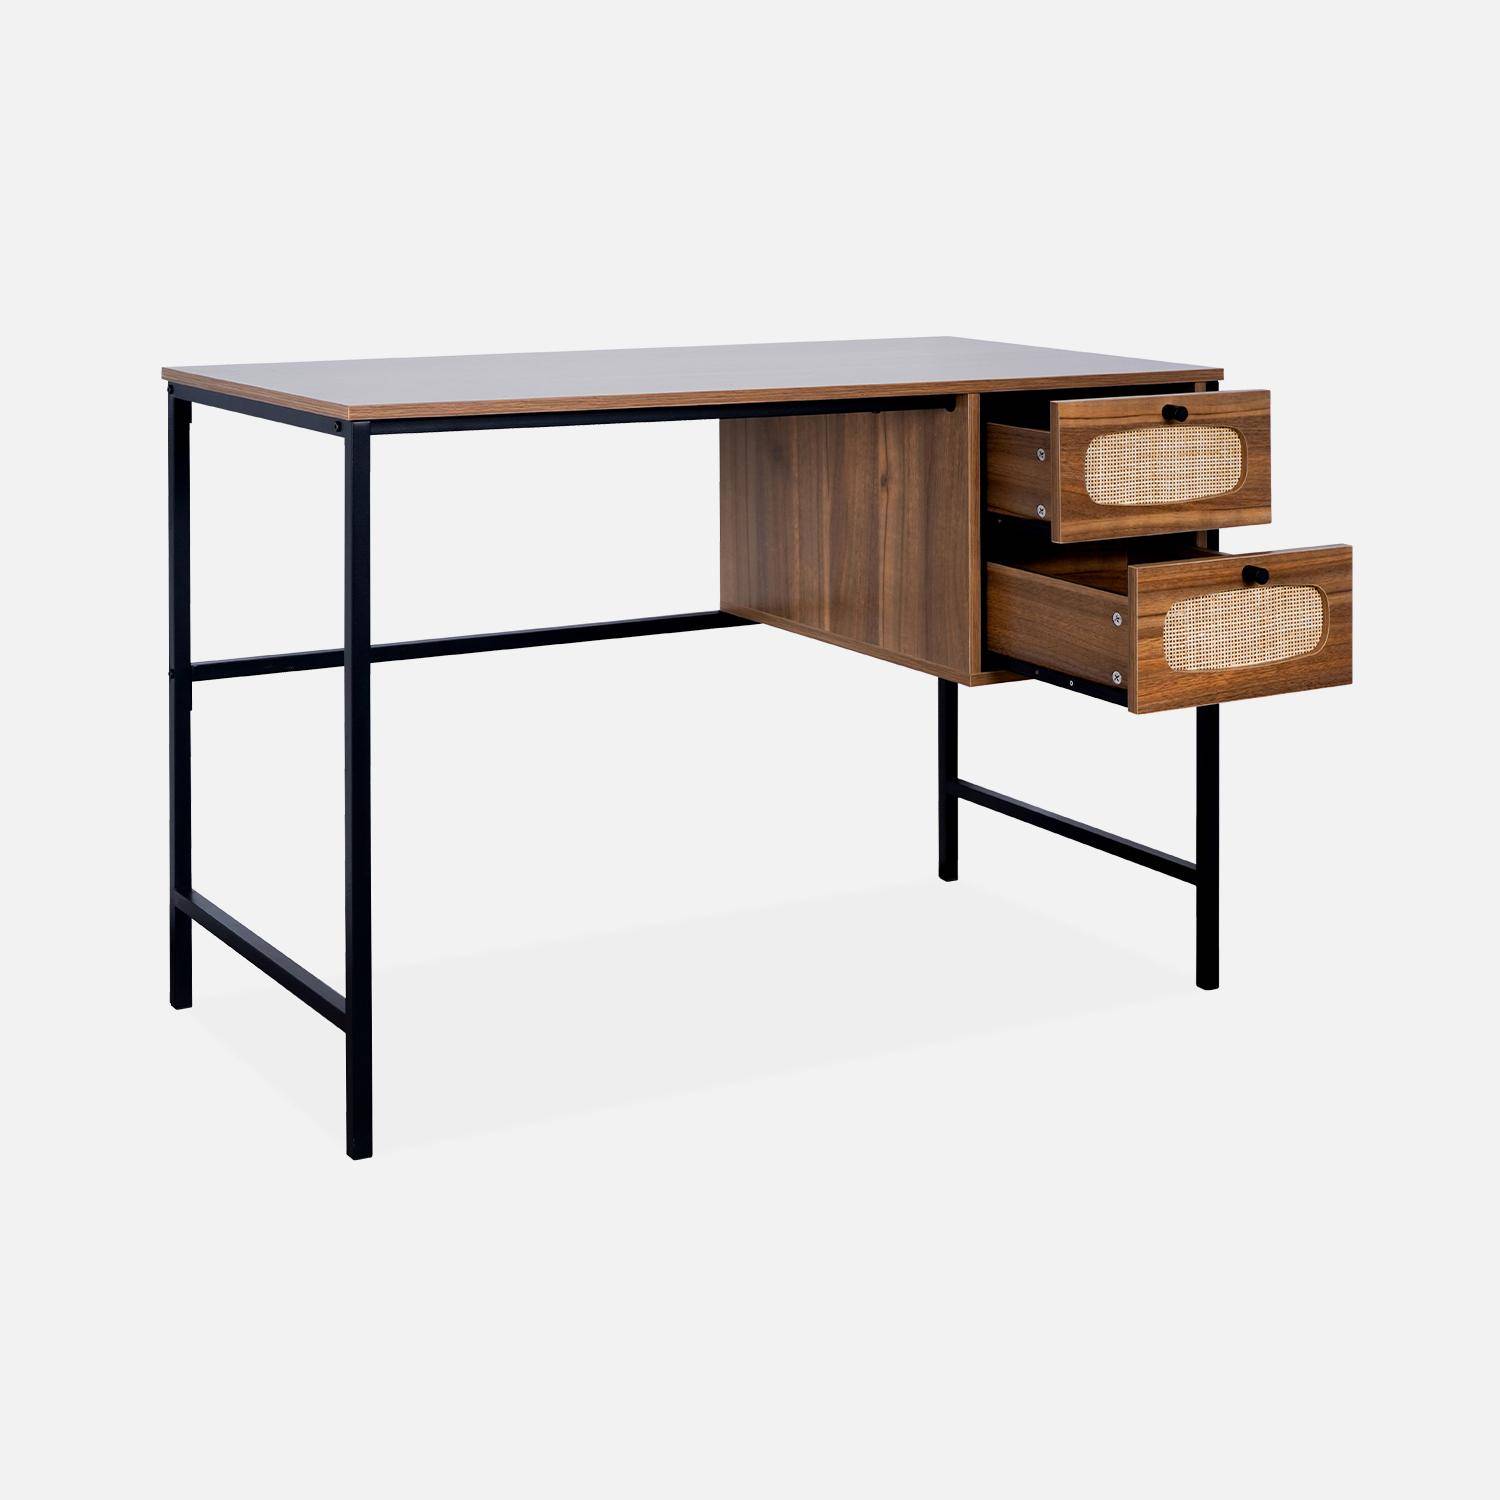 Retro bureau met hout- en rieteffect, zwarte metalen poten en handgrepen Photo5